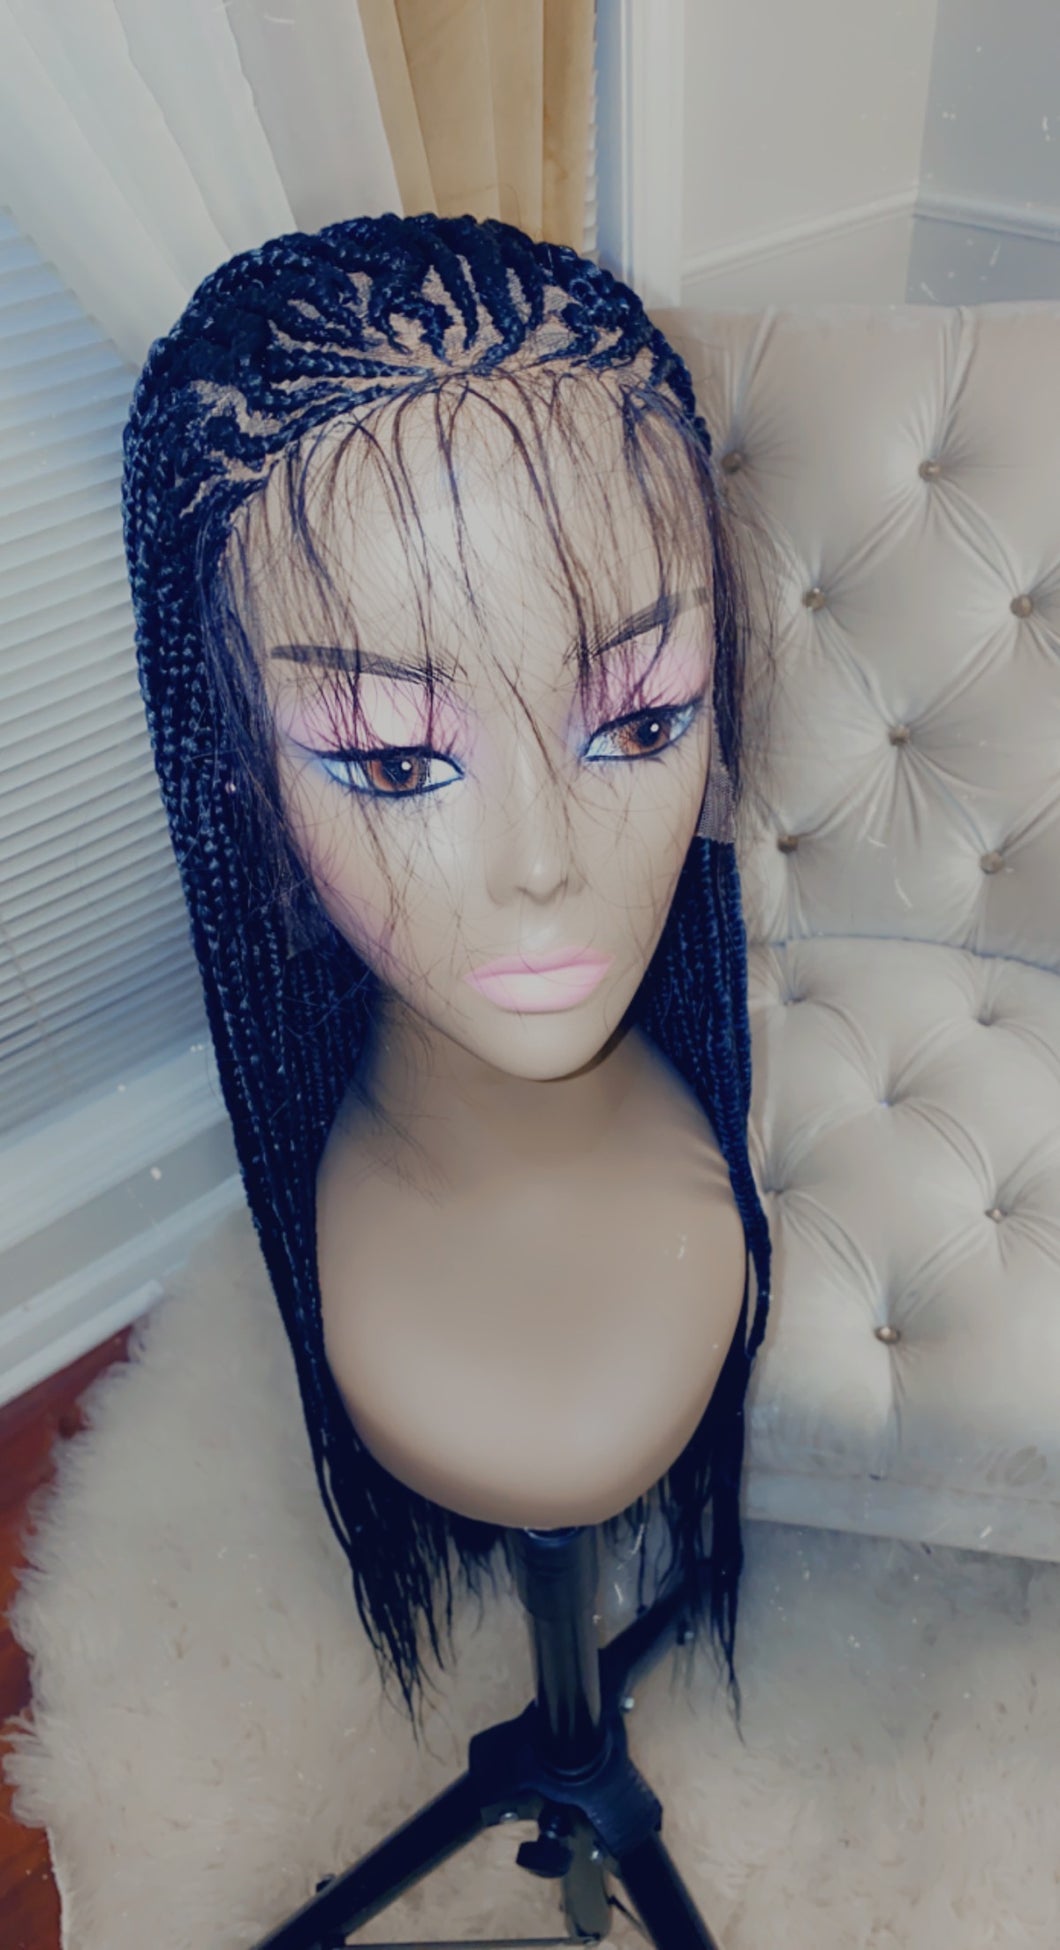 Custom Braided Wigs - Starting @ $425.00